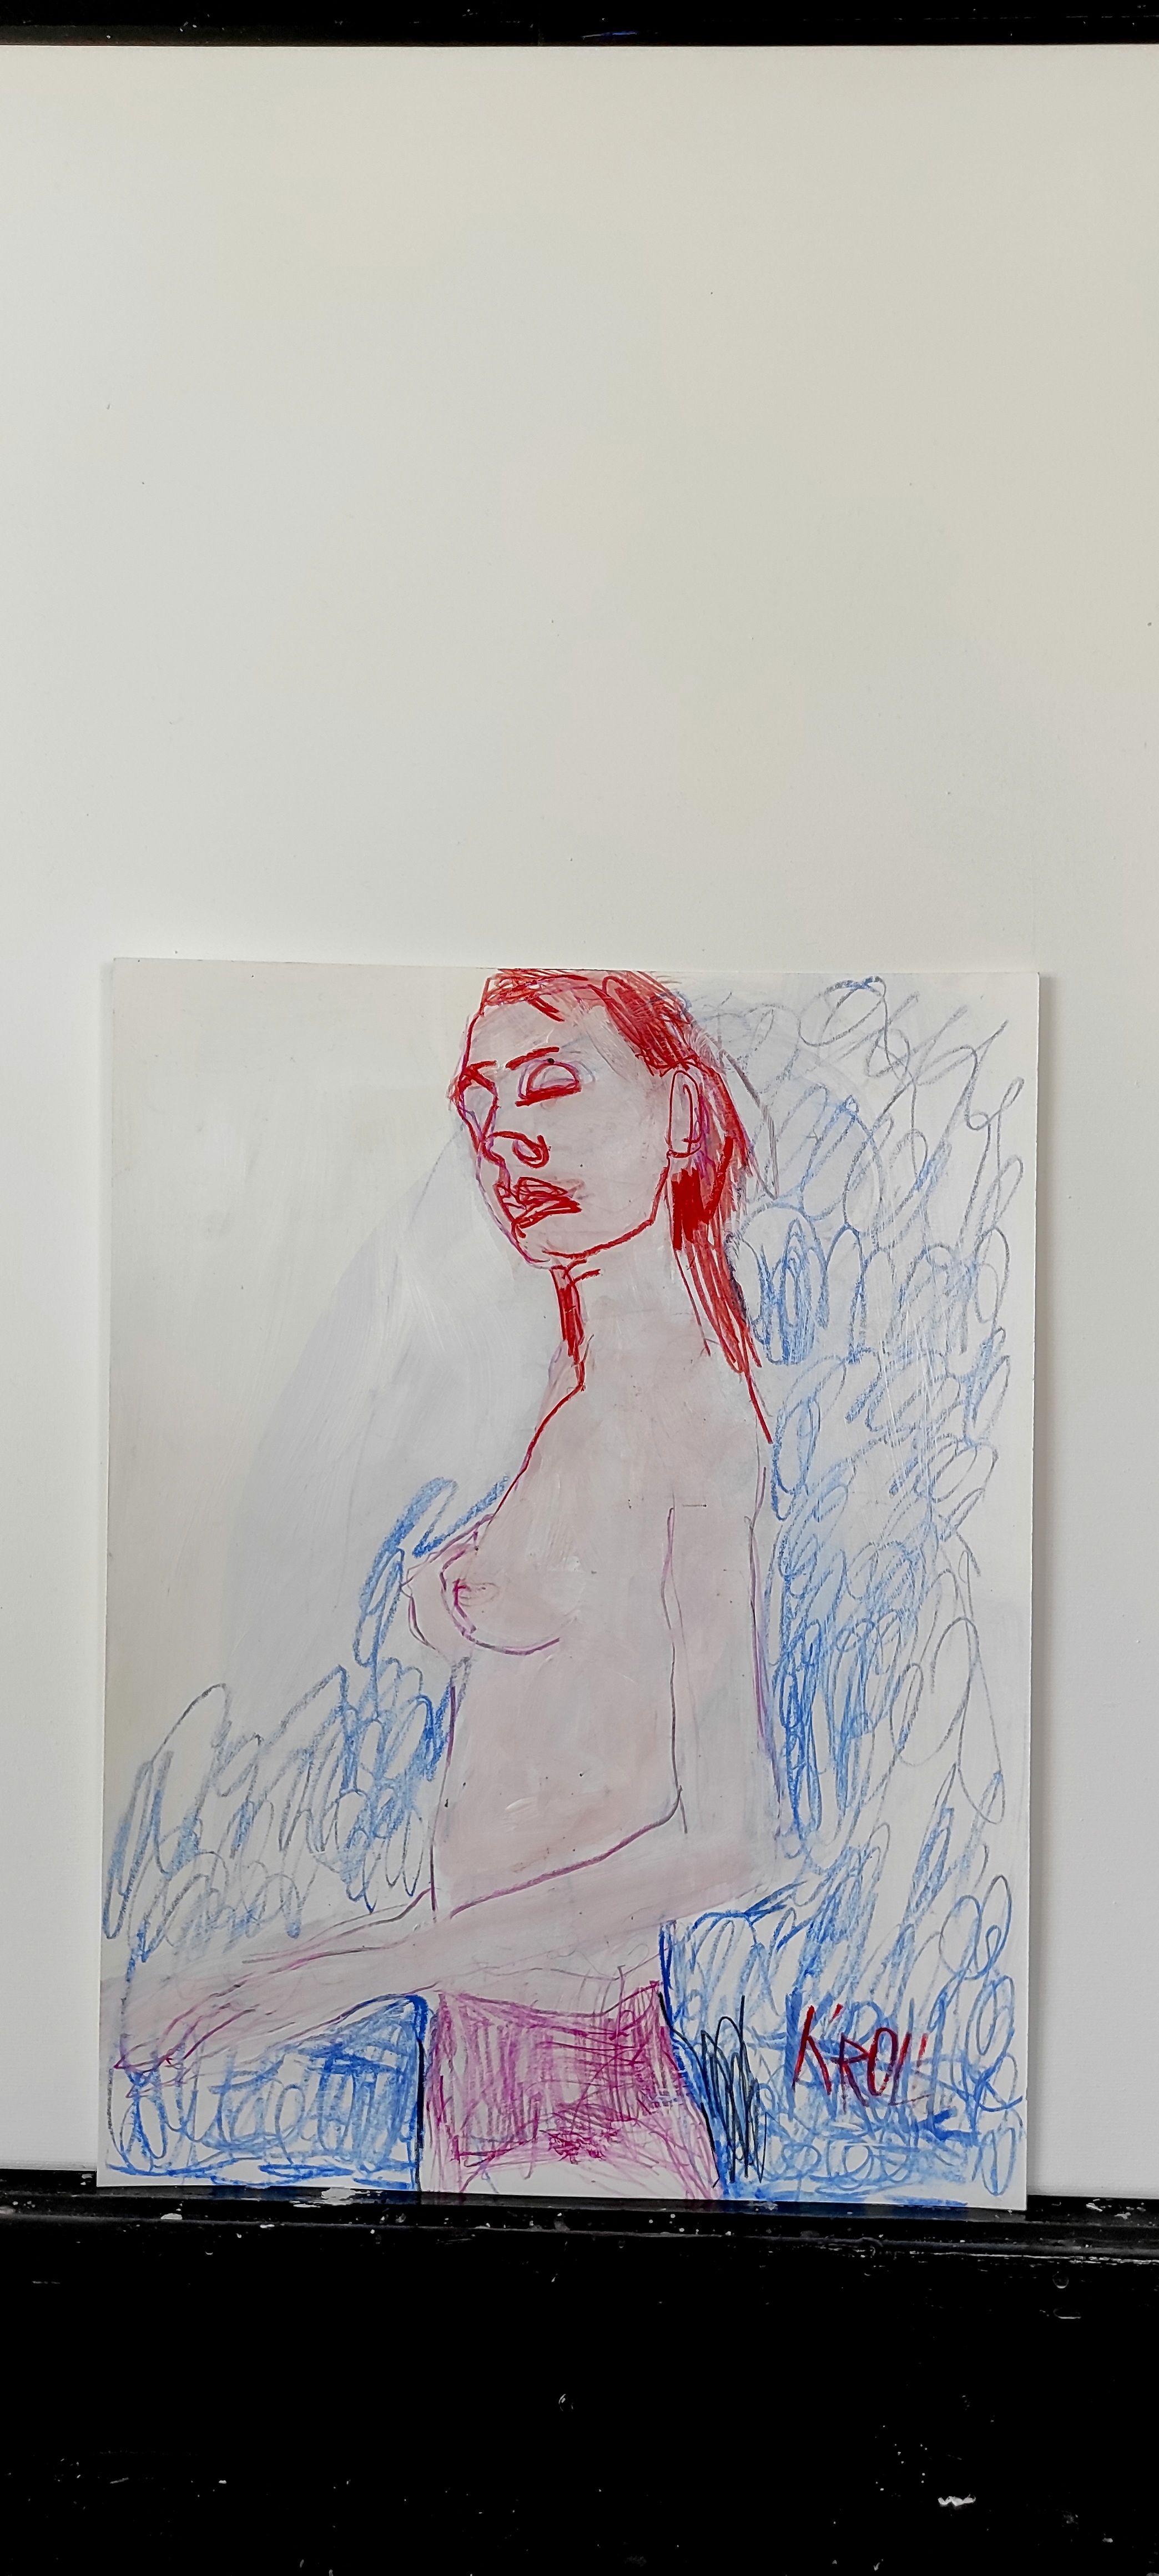 Femme debout semi-nue, dessin, crayon/crayon coloré sur papier - Expressionniste Art par Barbara Kroll